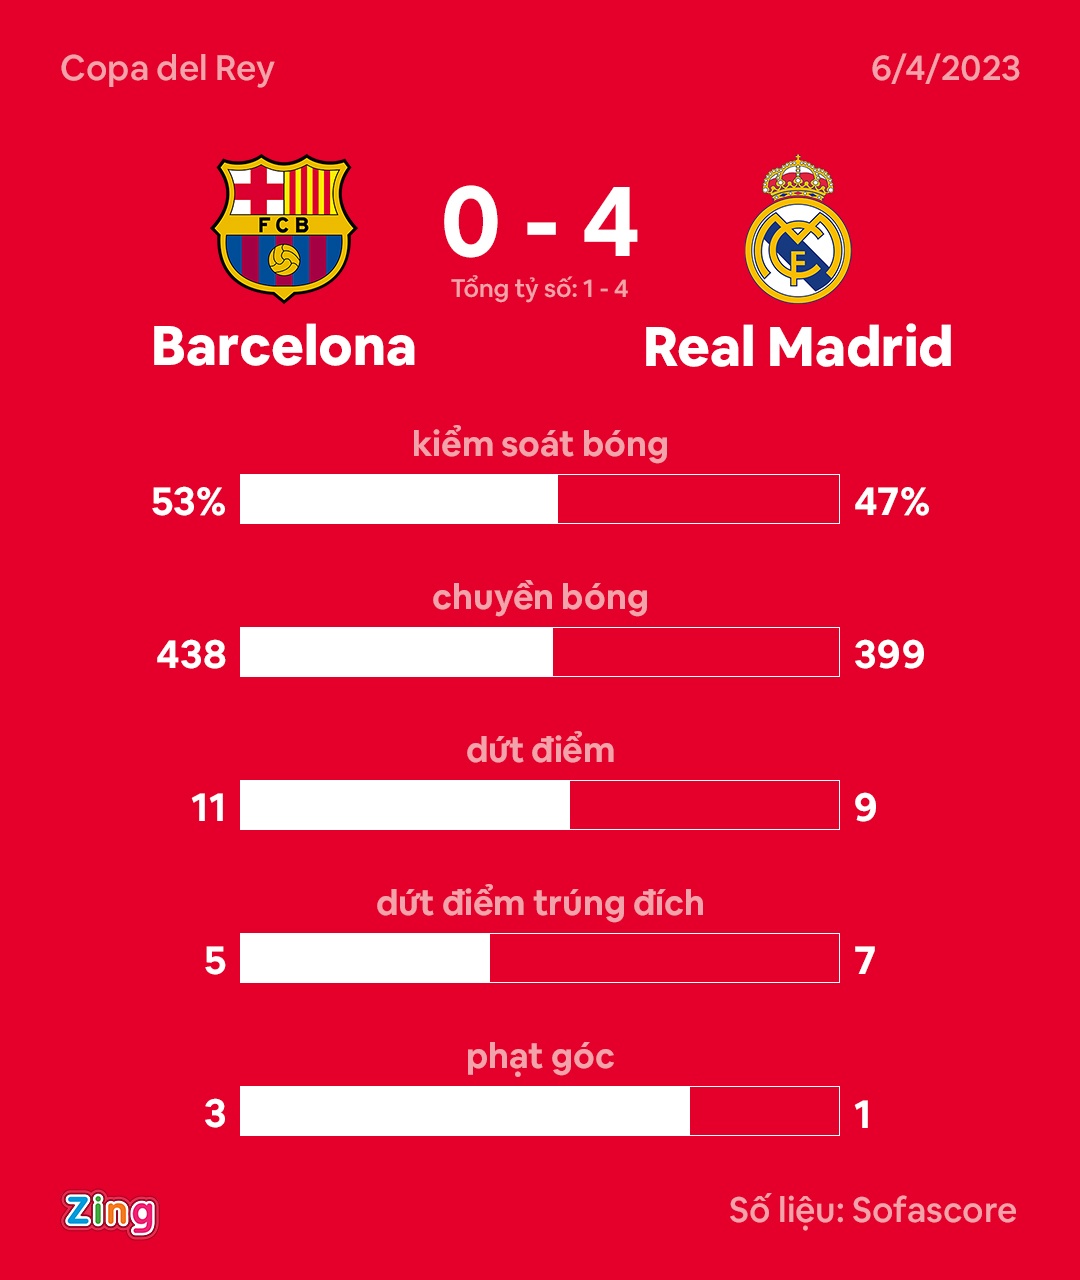 Barca thua Real anh 2